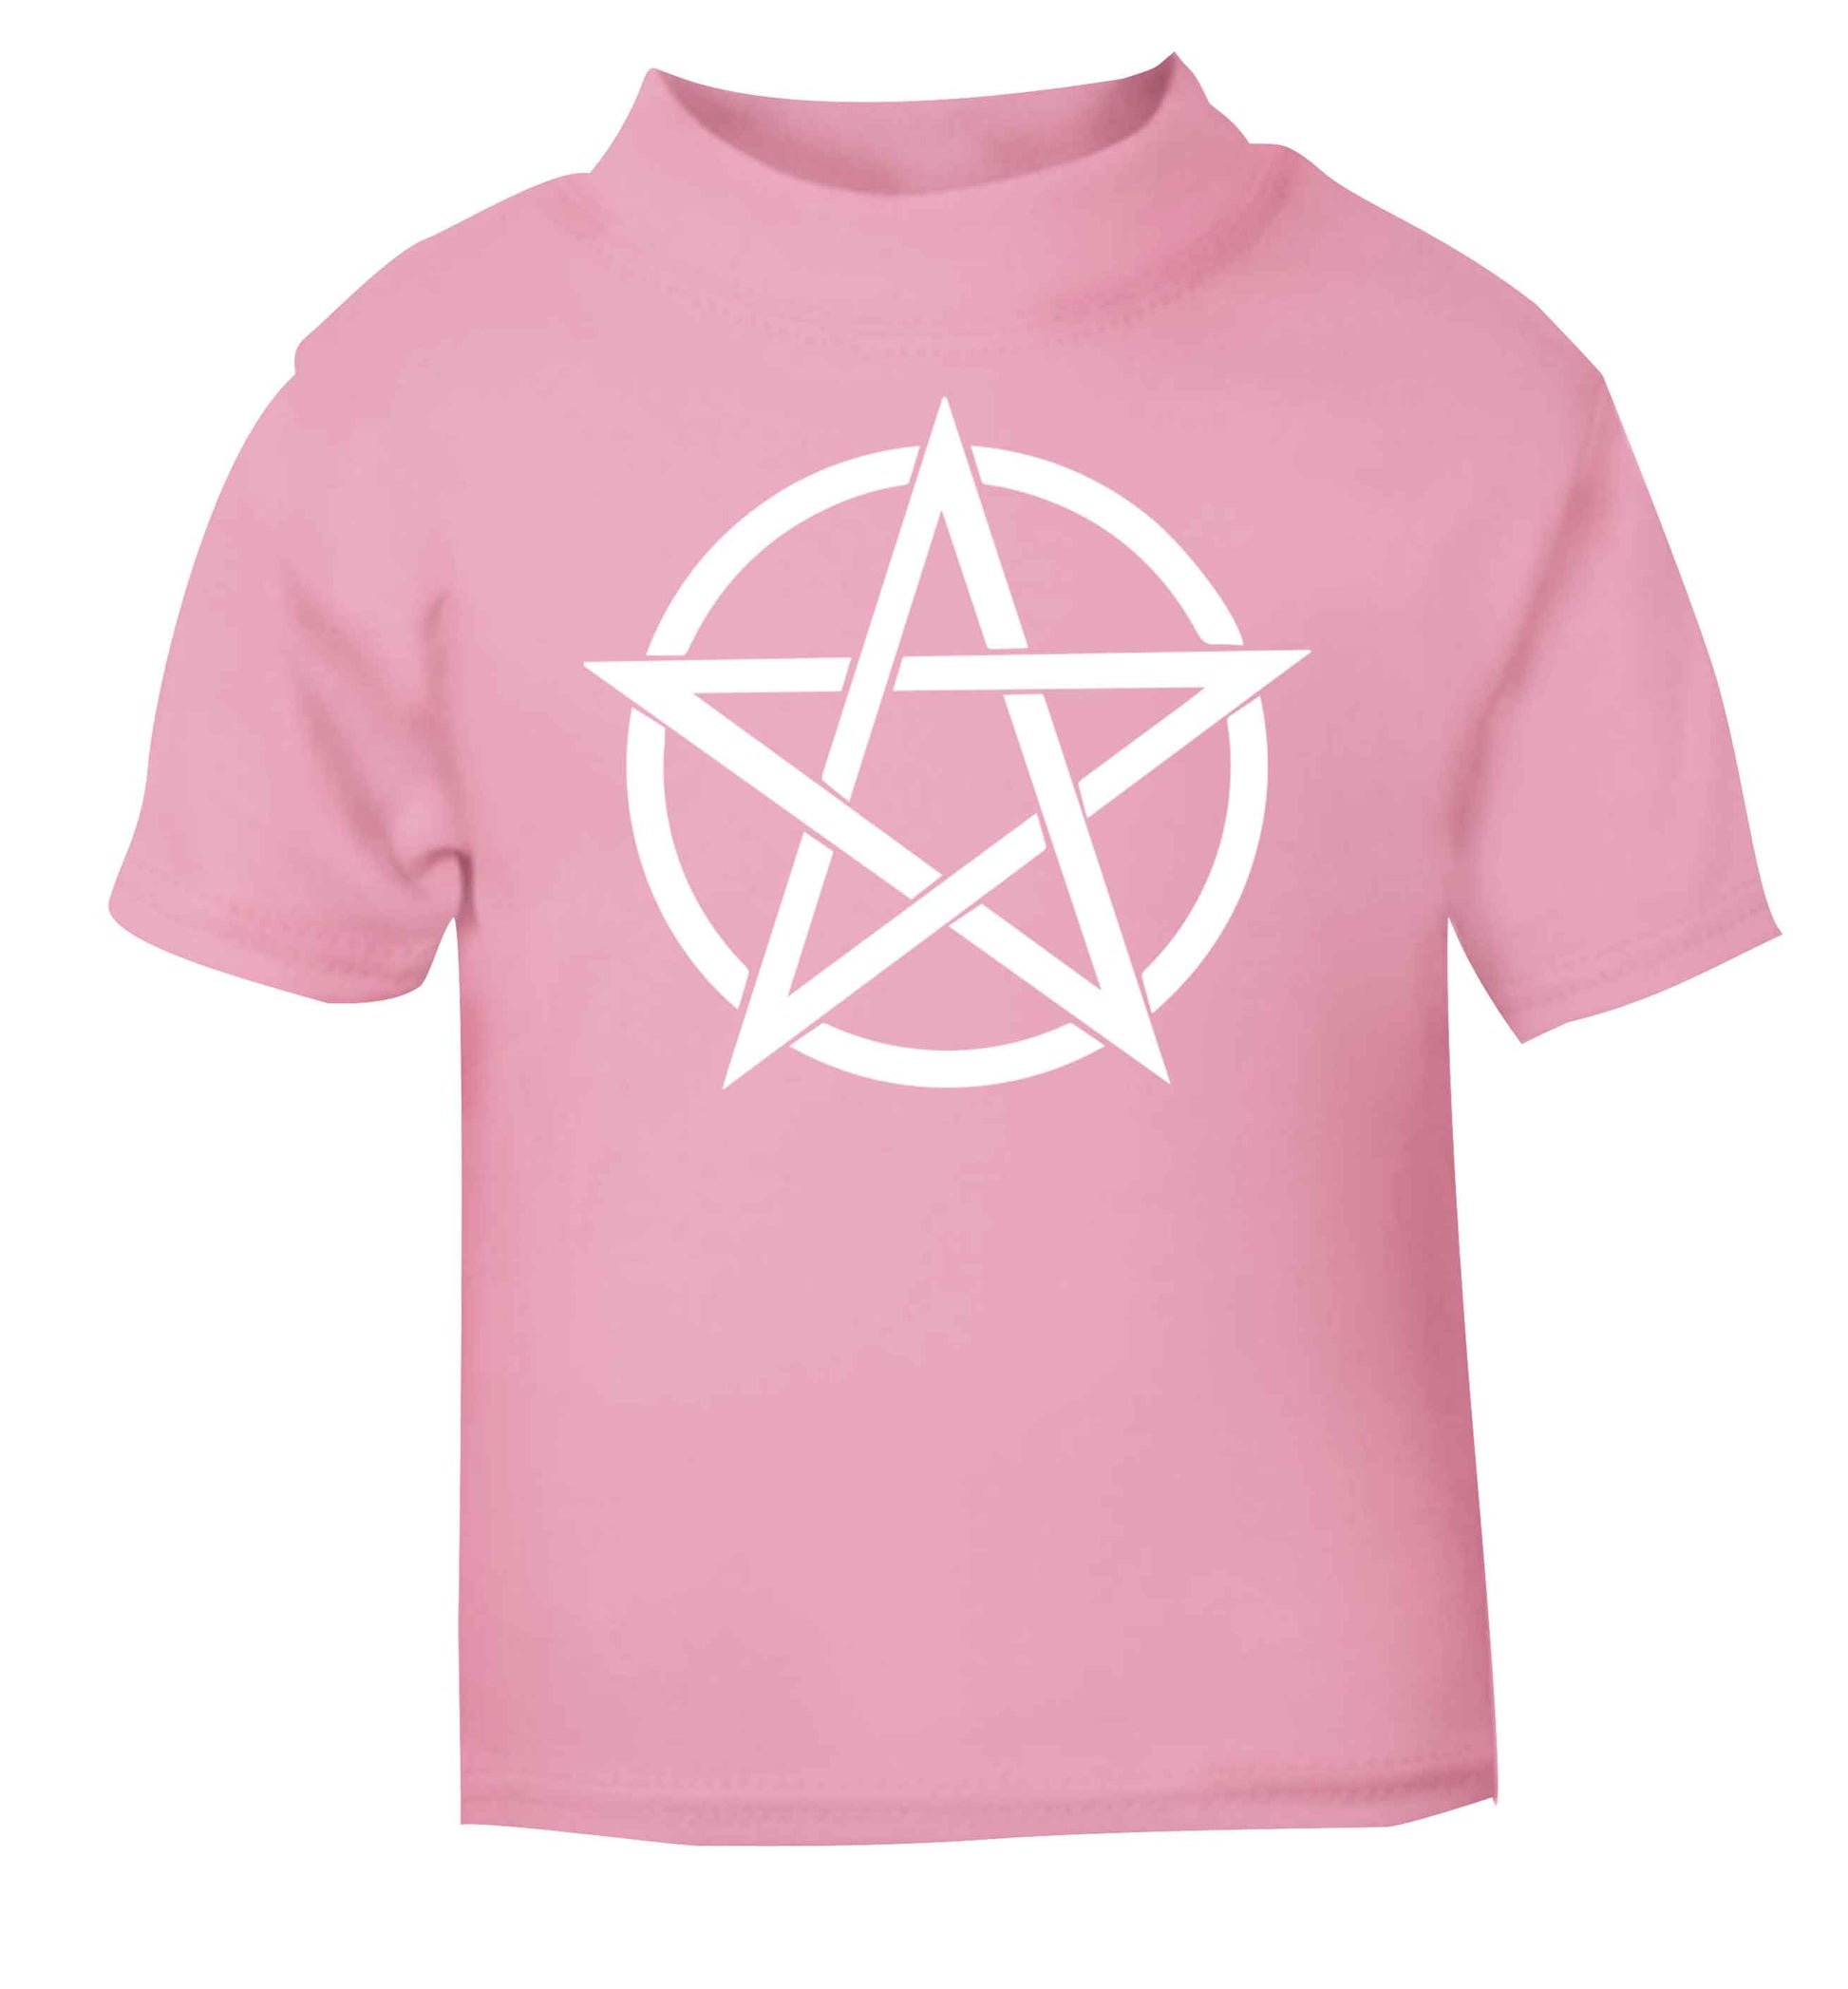 Pentagram symbol light pink baby toddler Tshirt 2 Years